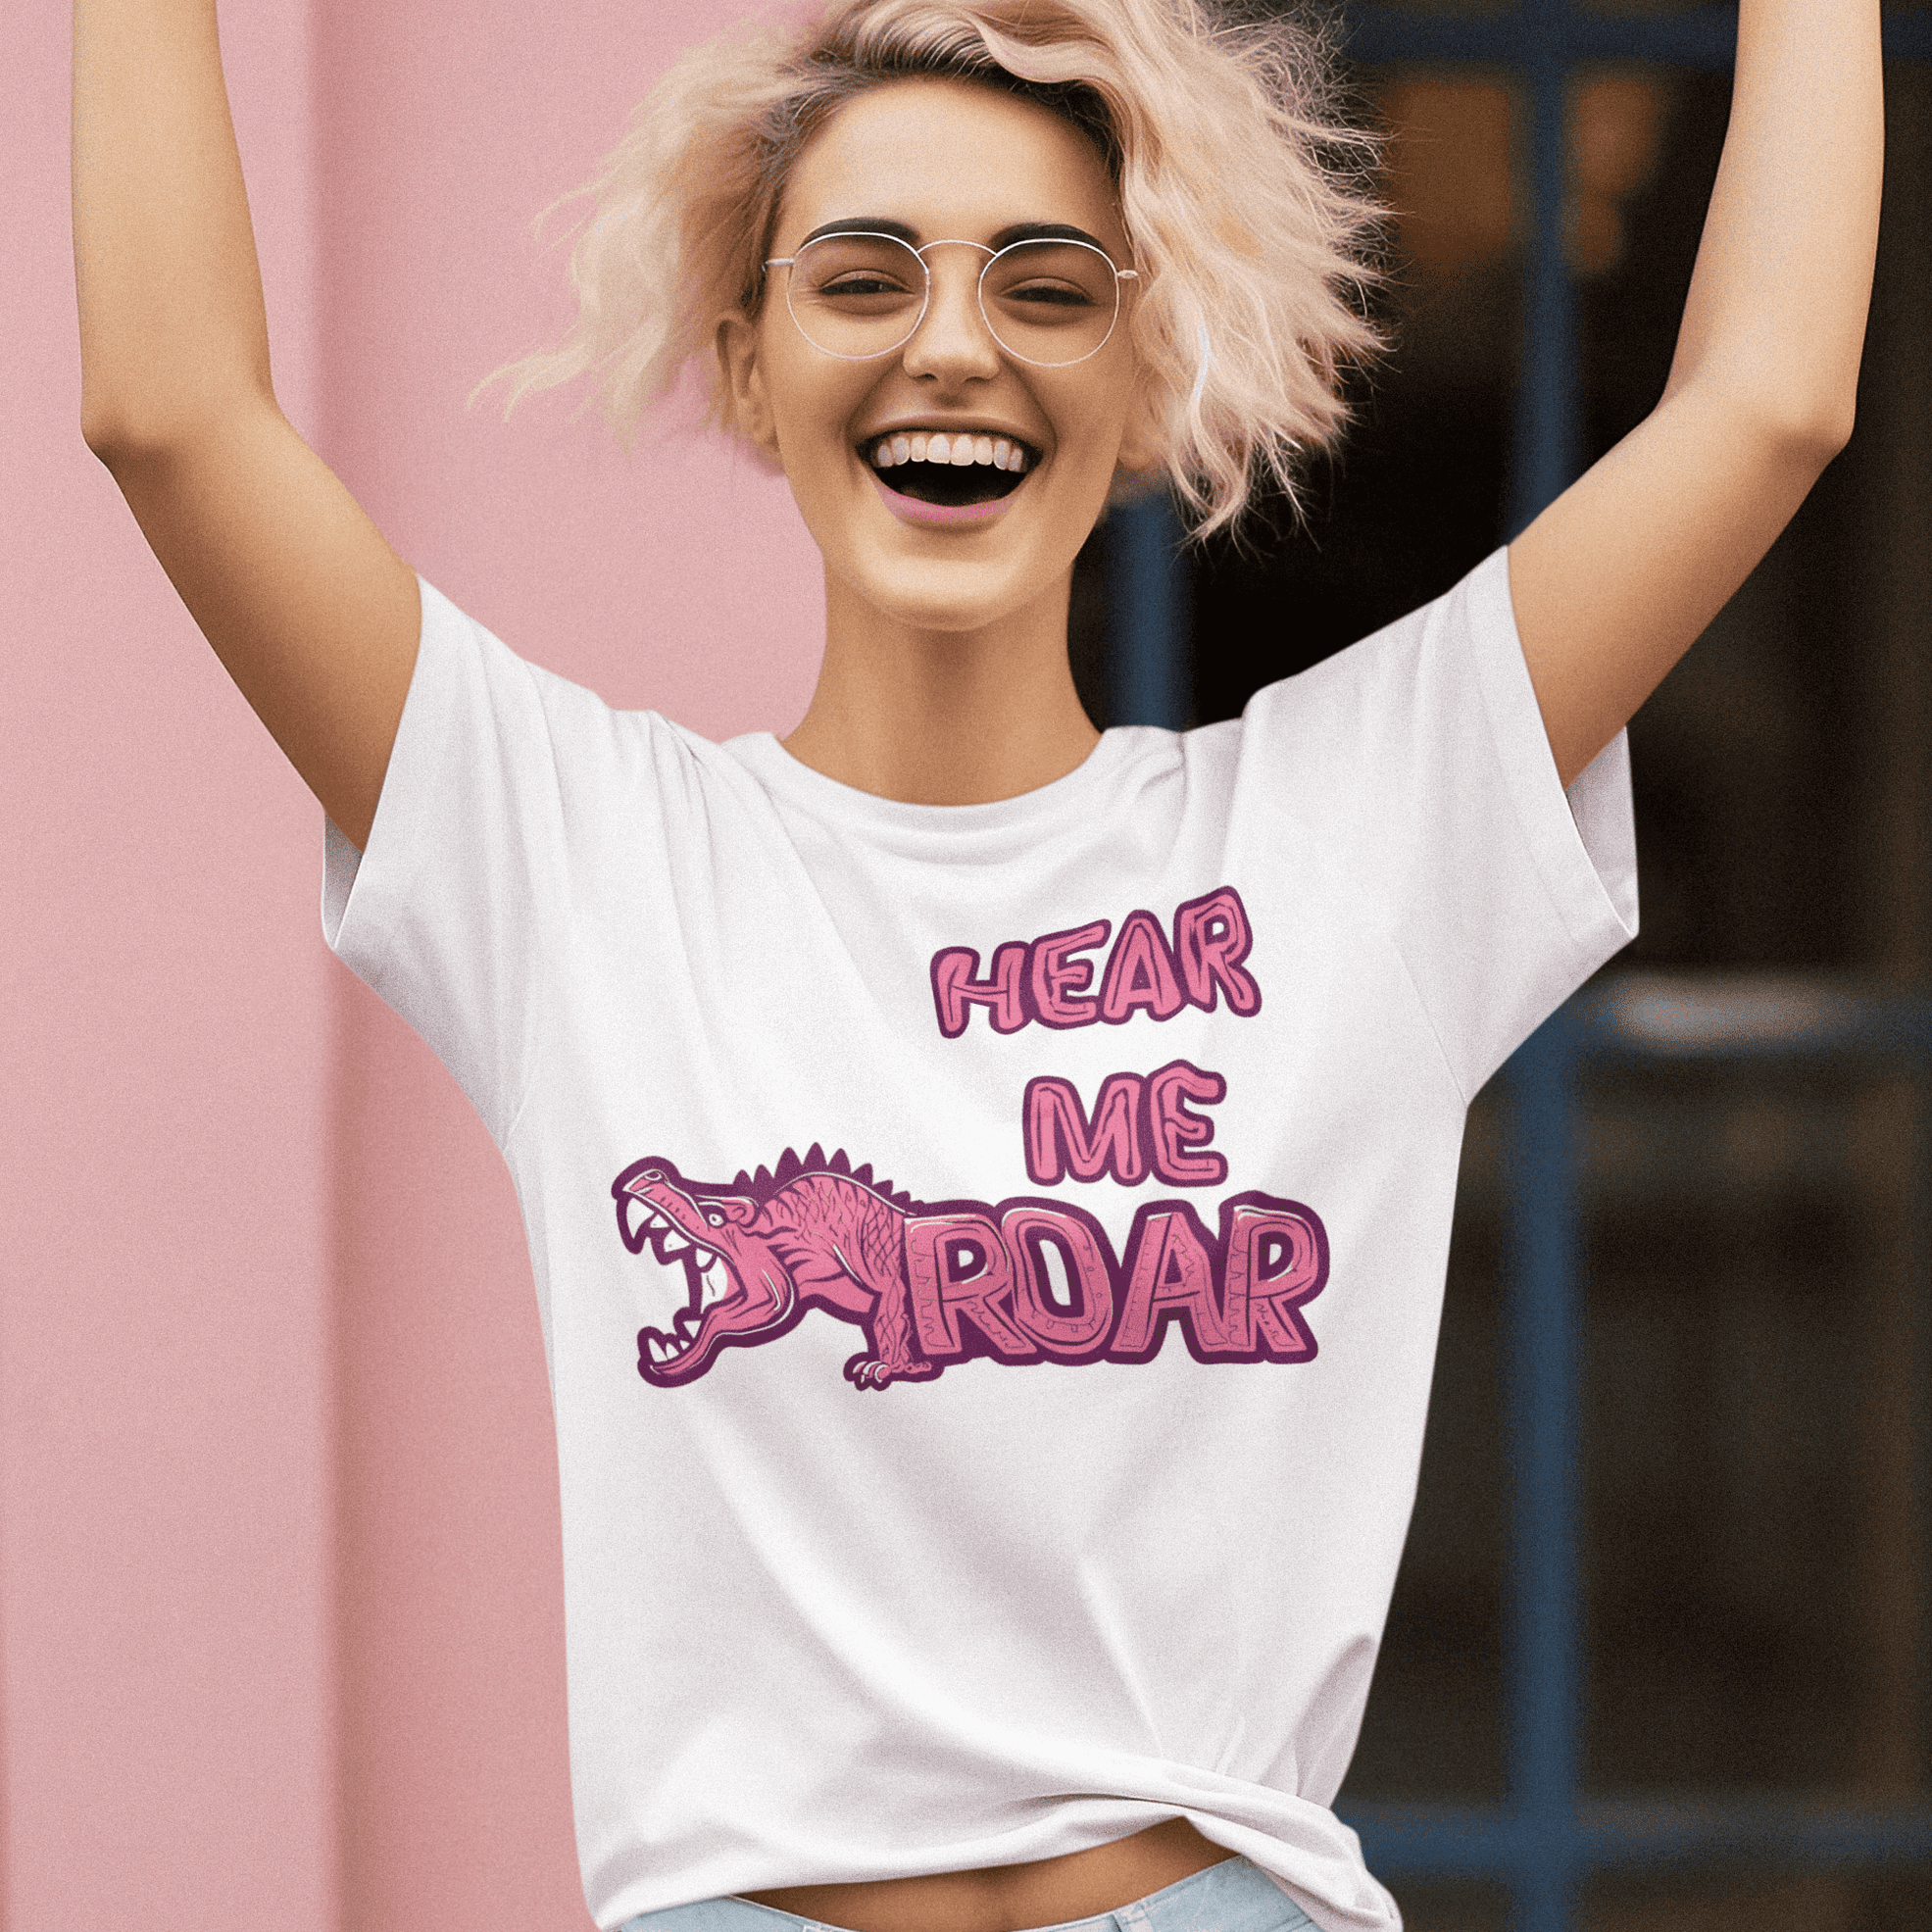 Women's 'Hear Me Roar' Empowerment Tee - Bold Feminist Statement Shirt